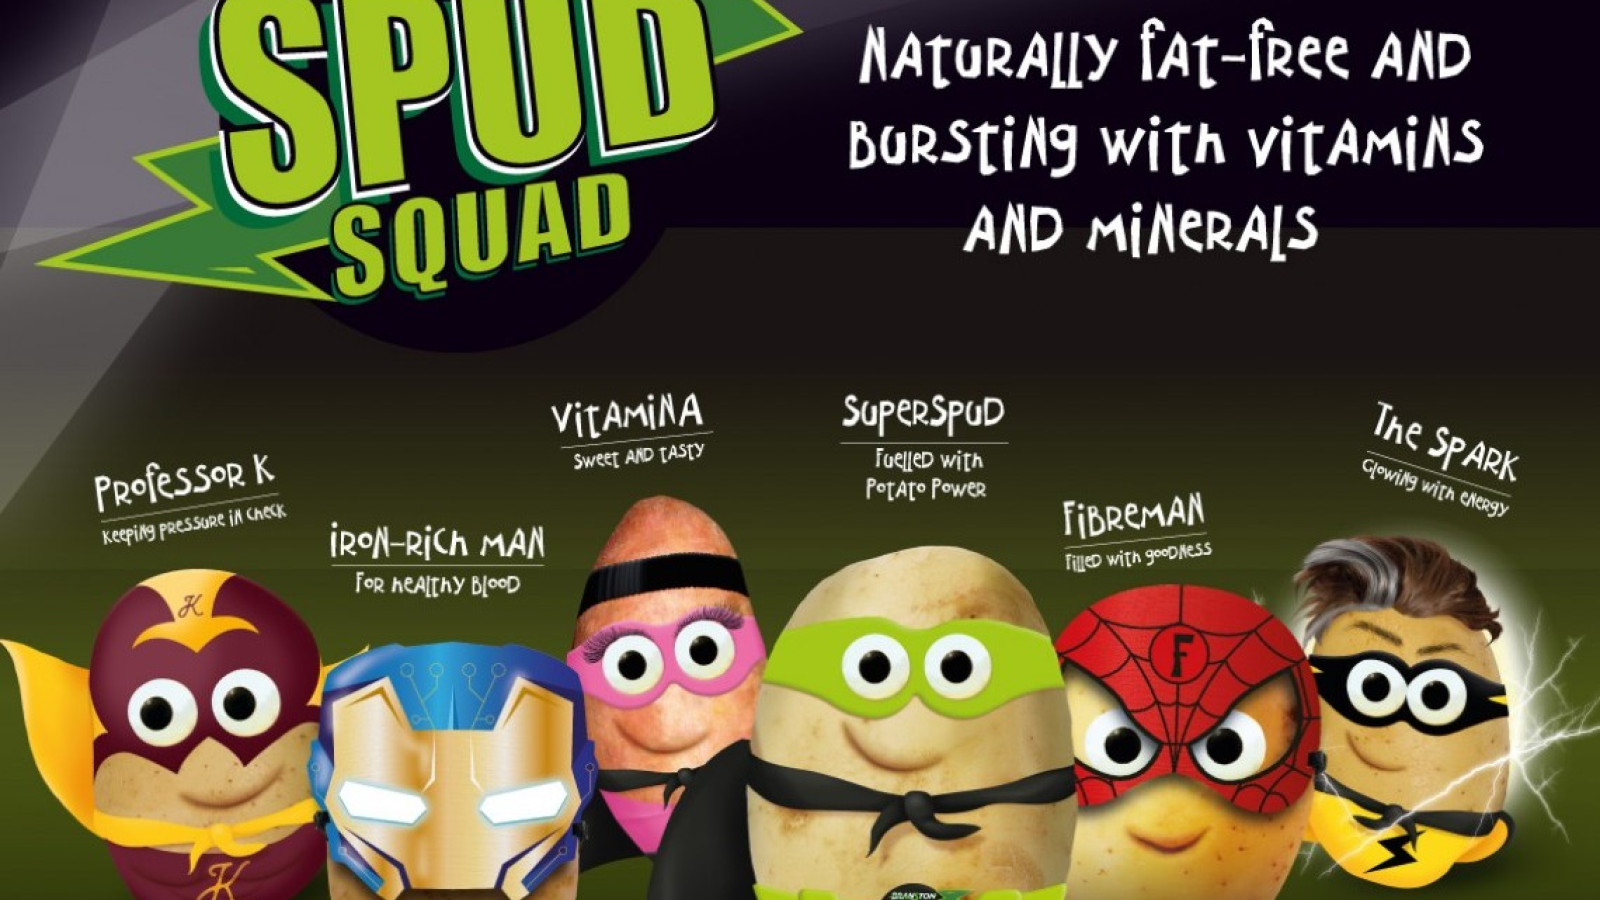 Meet The Spud Squad